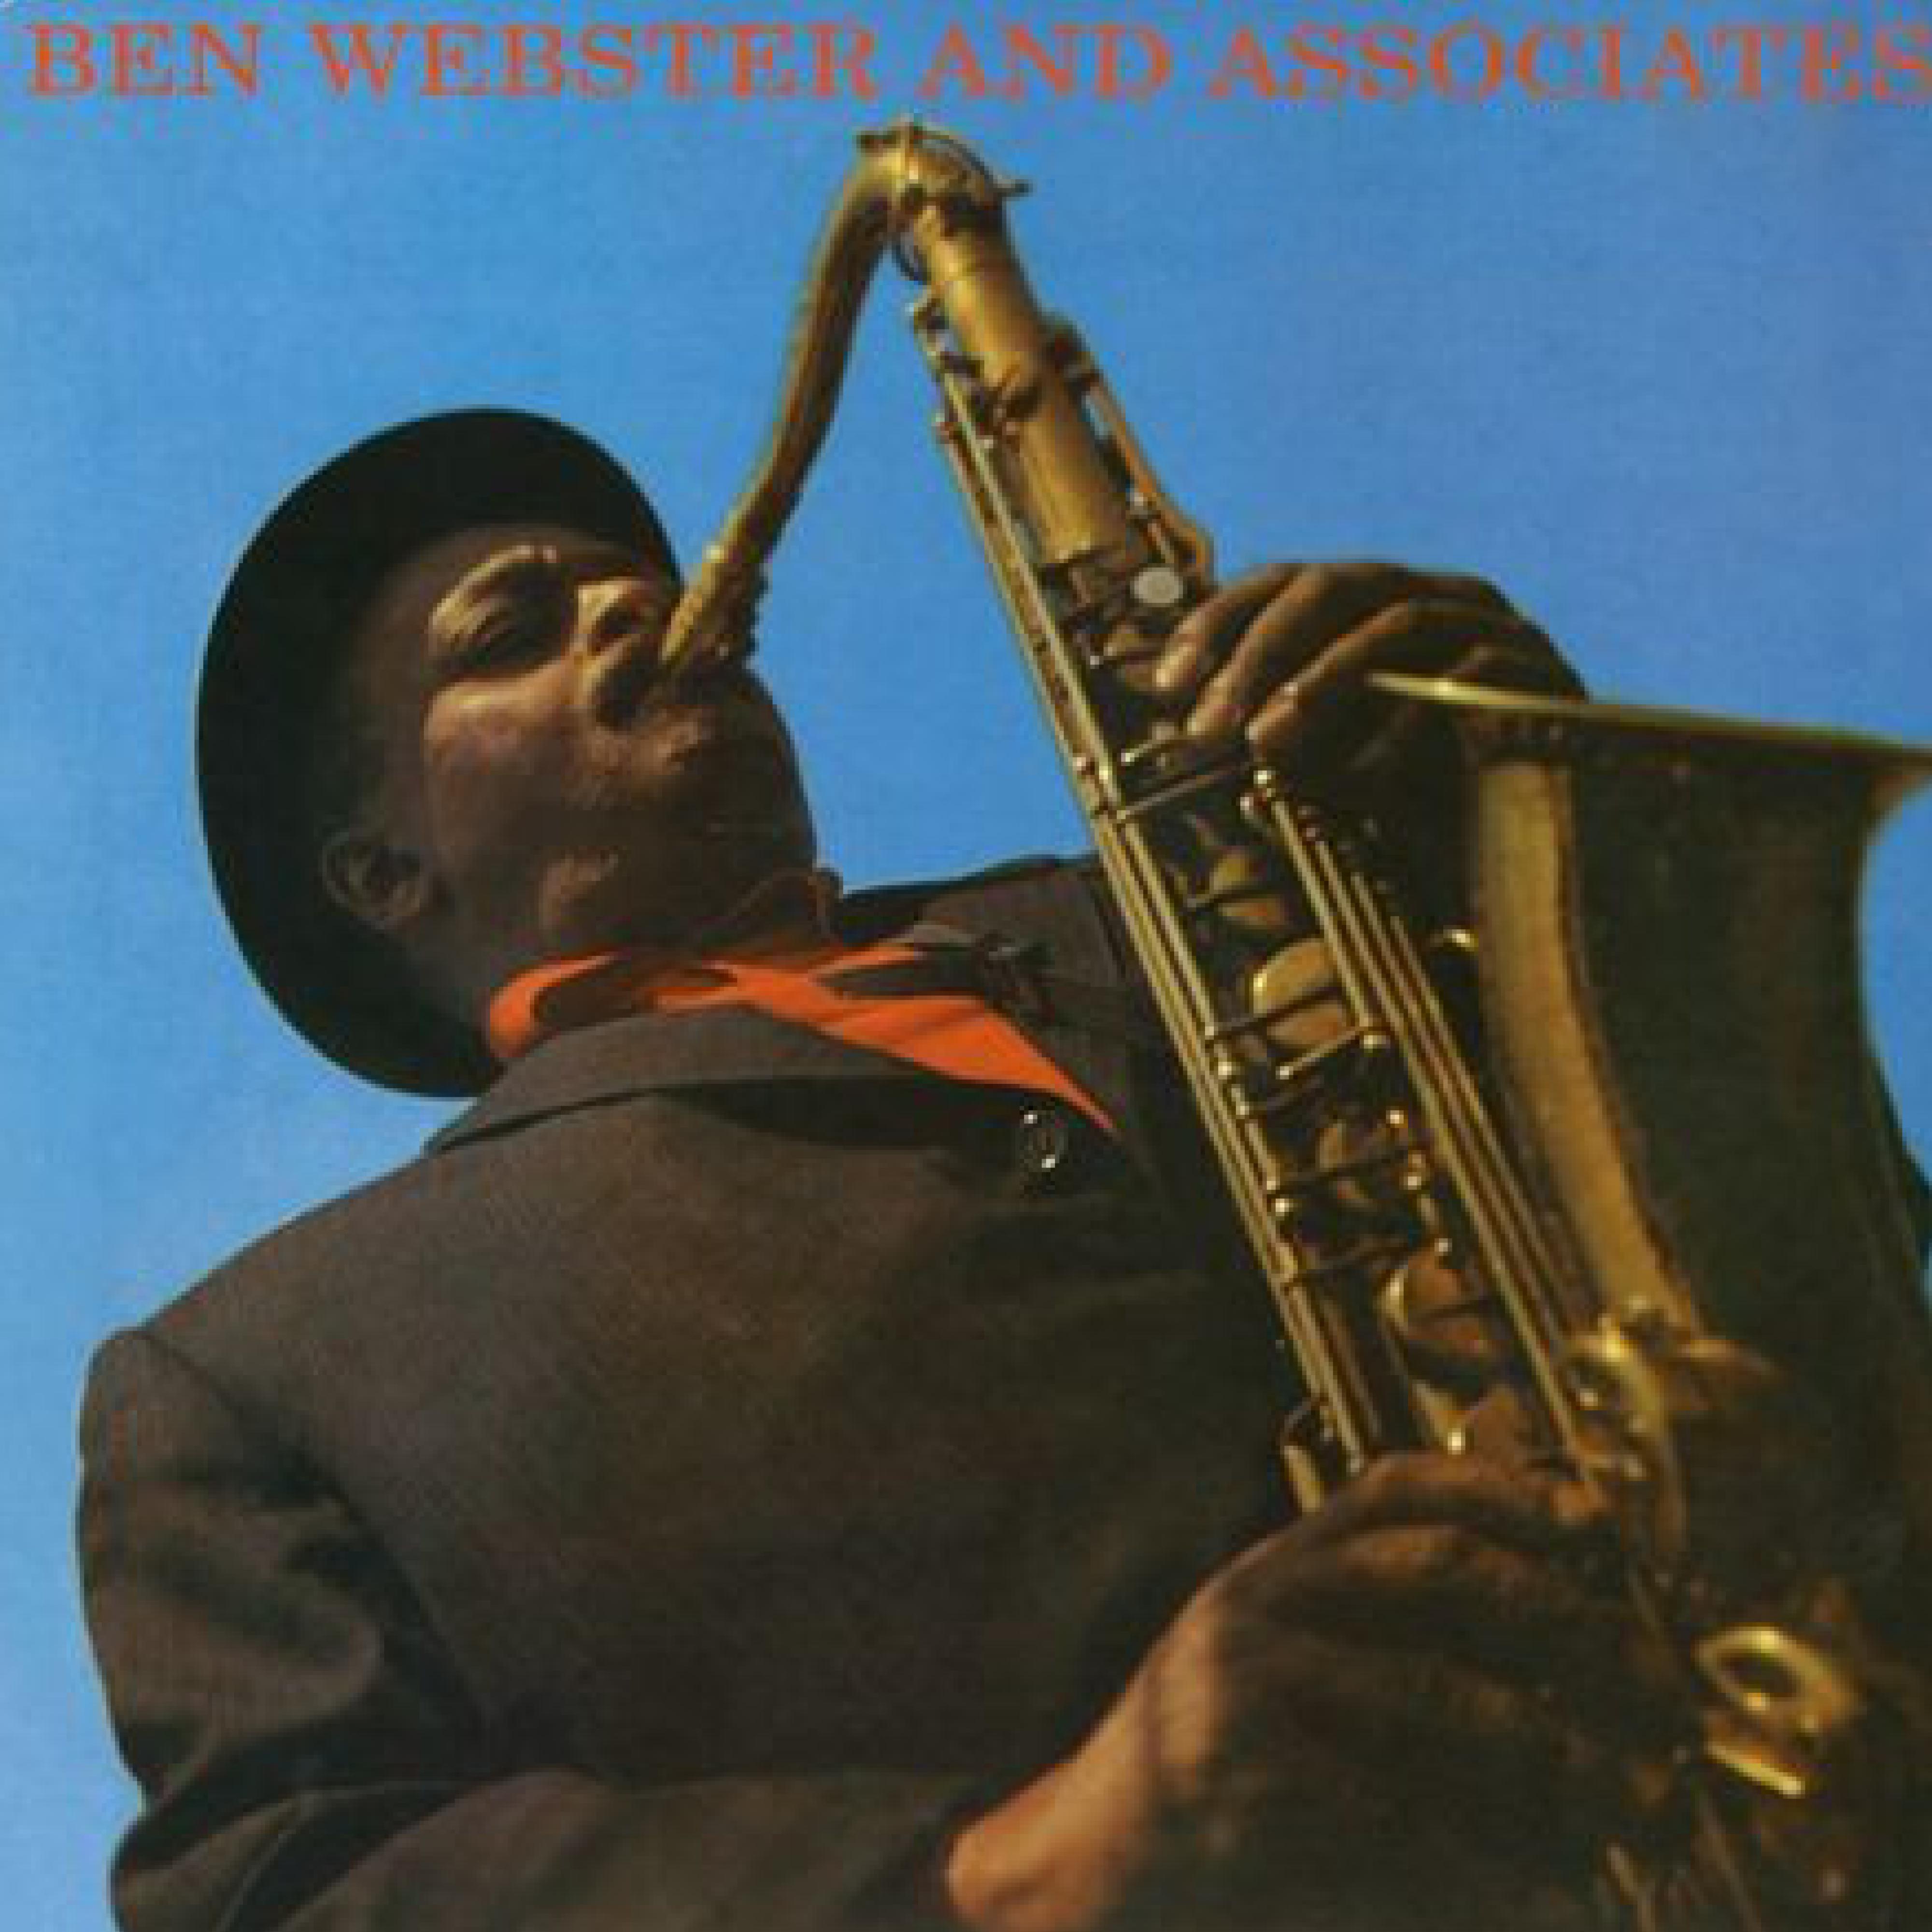 Ben Webster & Associates 1959专辑